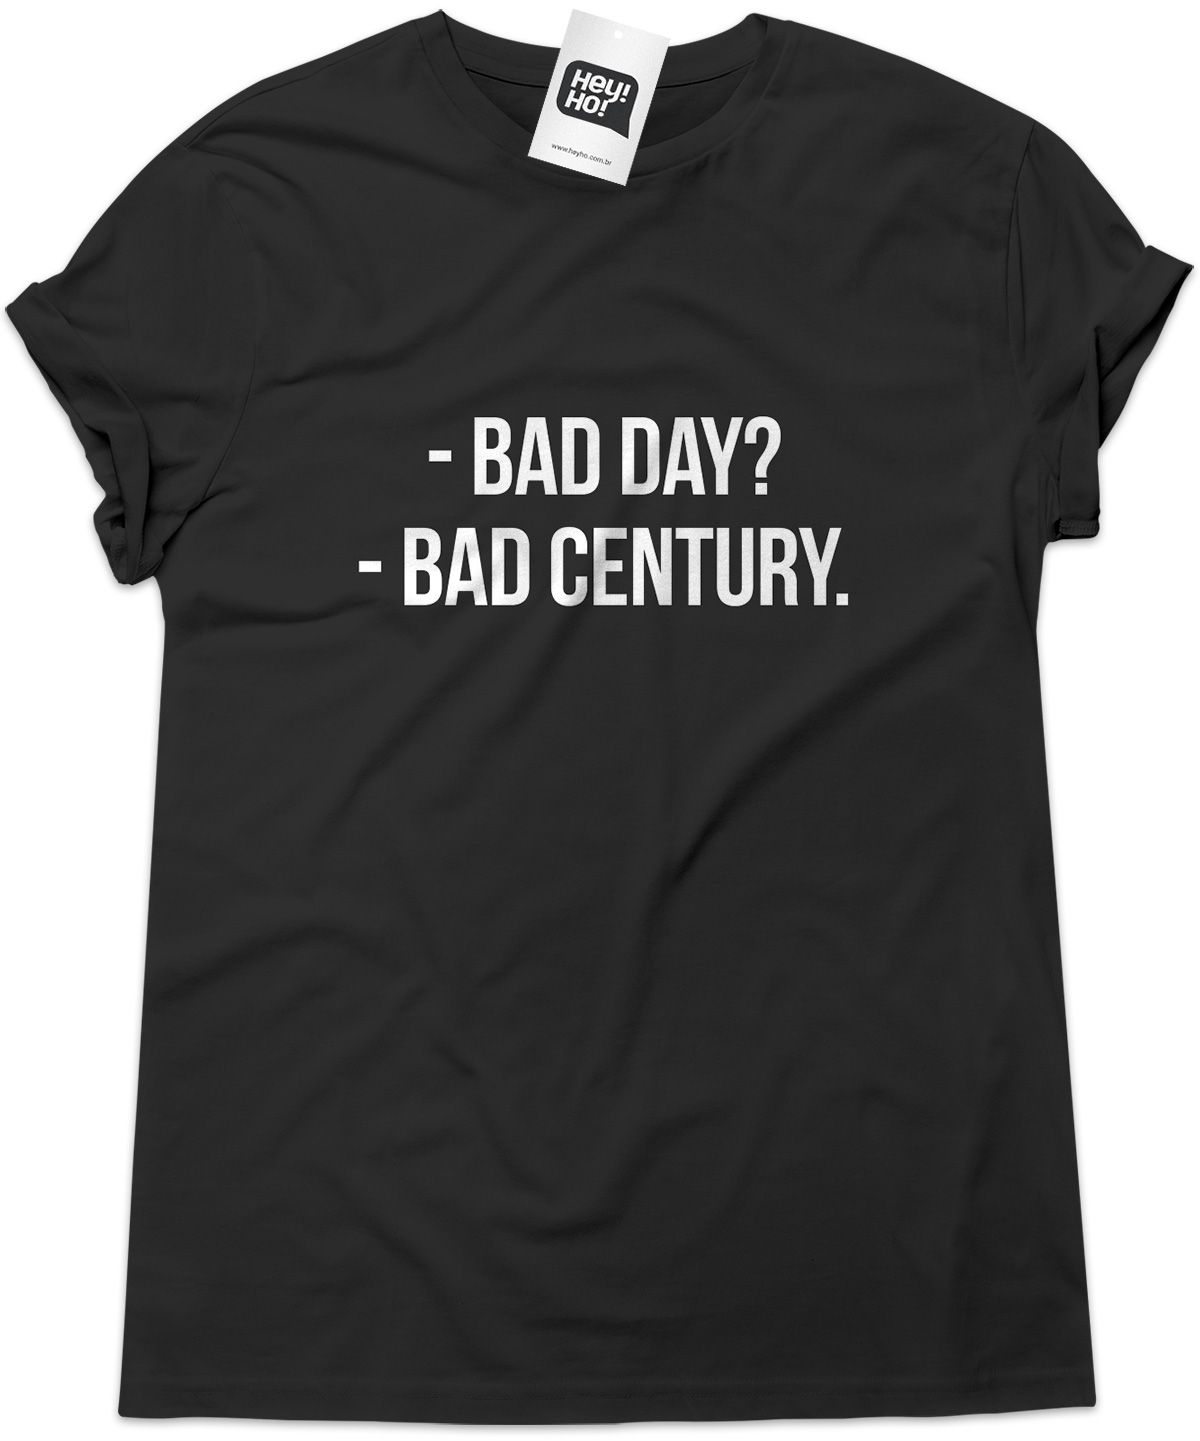 THE ORIGINALS - Bad Day